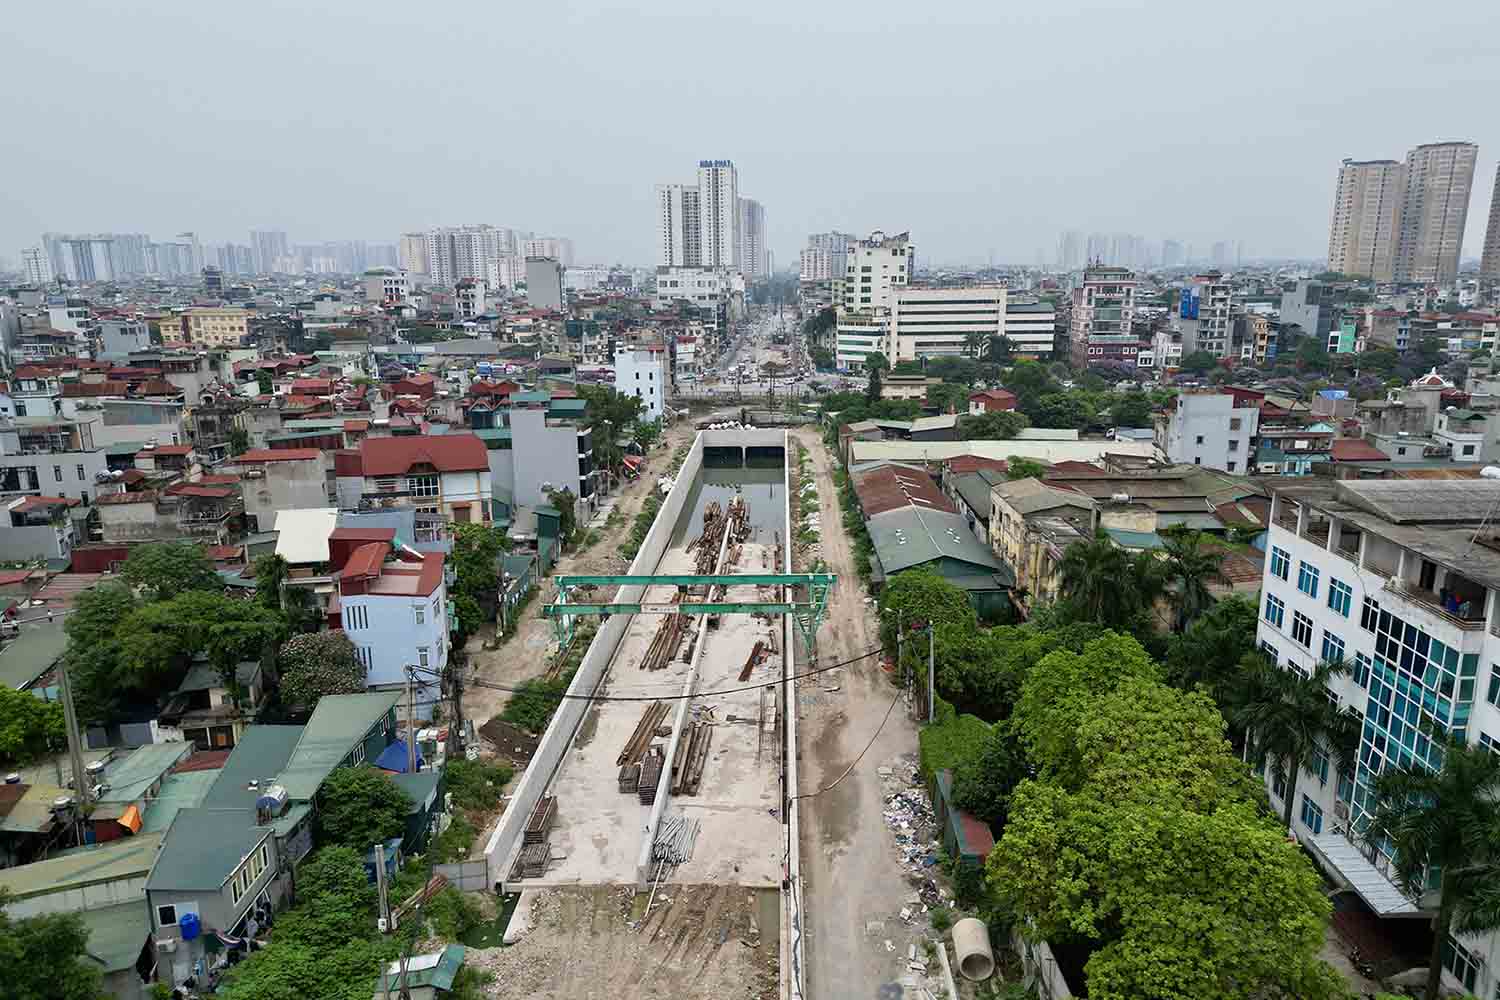 dự án được chia thành 3 vùng gồm vùng phía Đầm Hồng, vùng đường sắt và vùng phía Kim Đồng.  Đến nay tổng thể dự án đạt sản lượng gần 45%. Trong đó hạng mục hầm chui phía Đầm Hồng đã cơ bản hoàn thành.